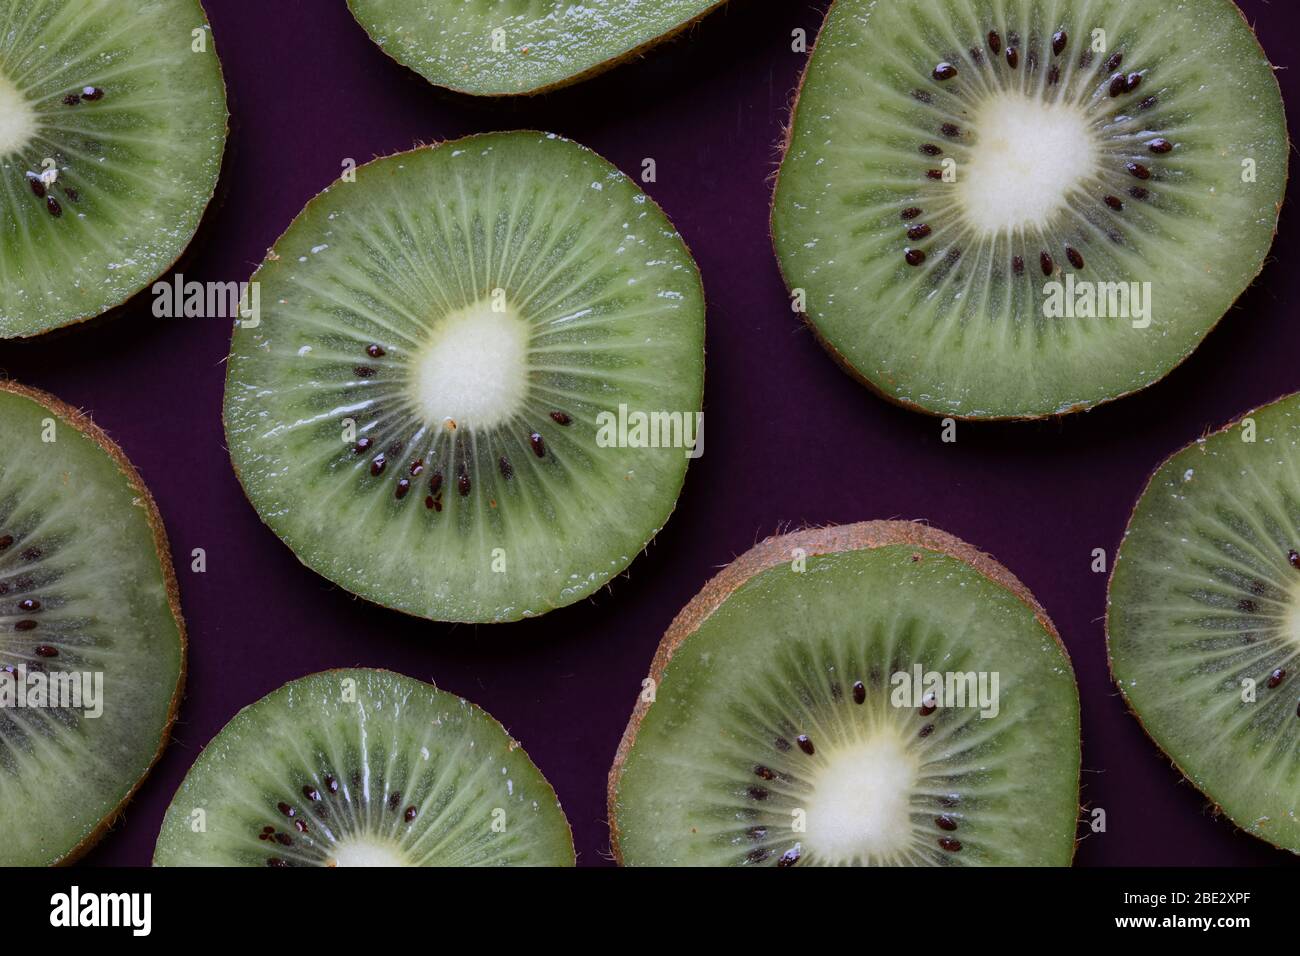 topview ist eine fantastische Fotokomposition aus frischen, leckeren, geschnittenen Kiwi-Früchten auf einem violetten Hintergrund Stockfoto